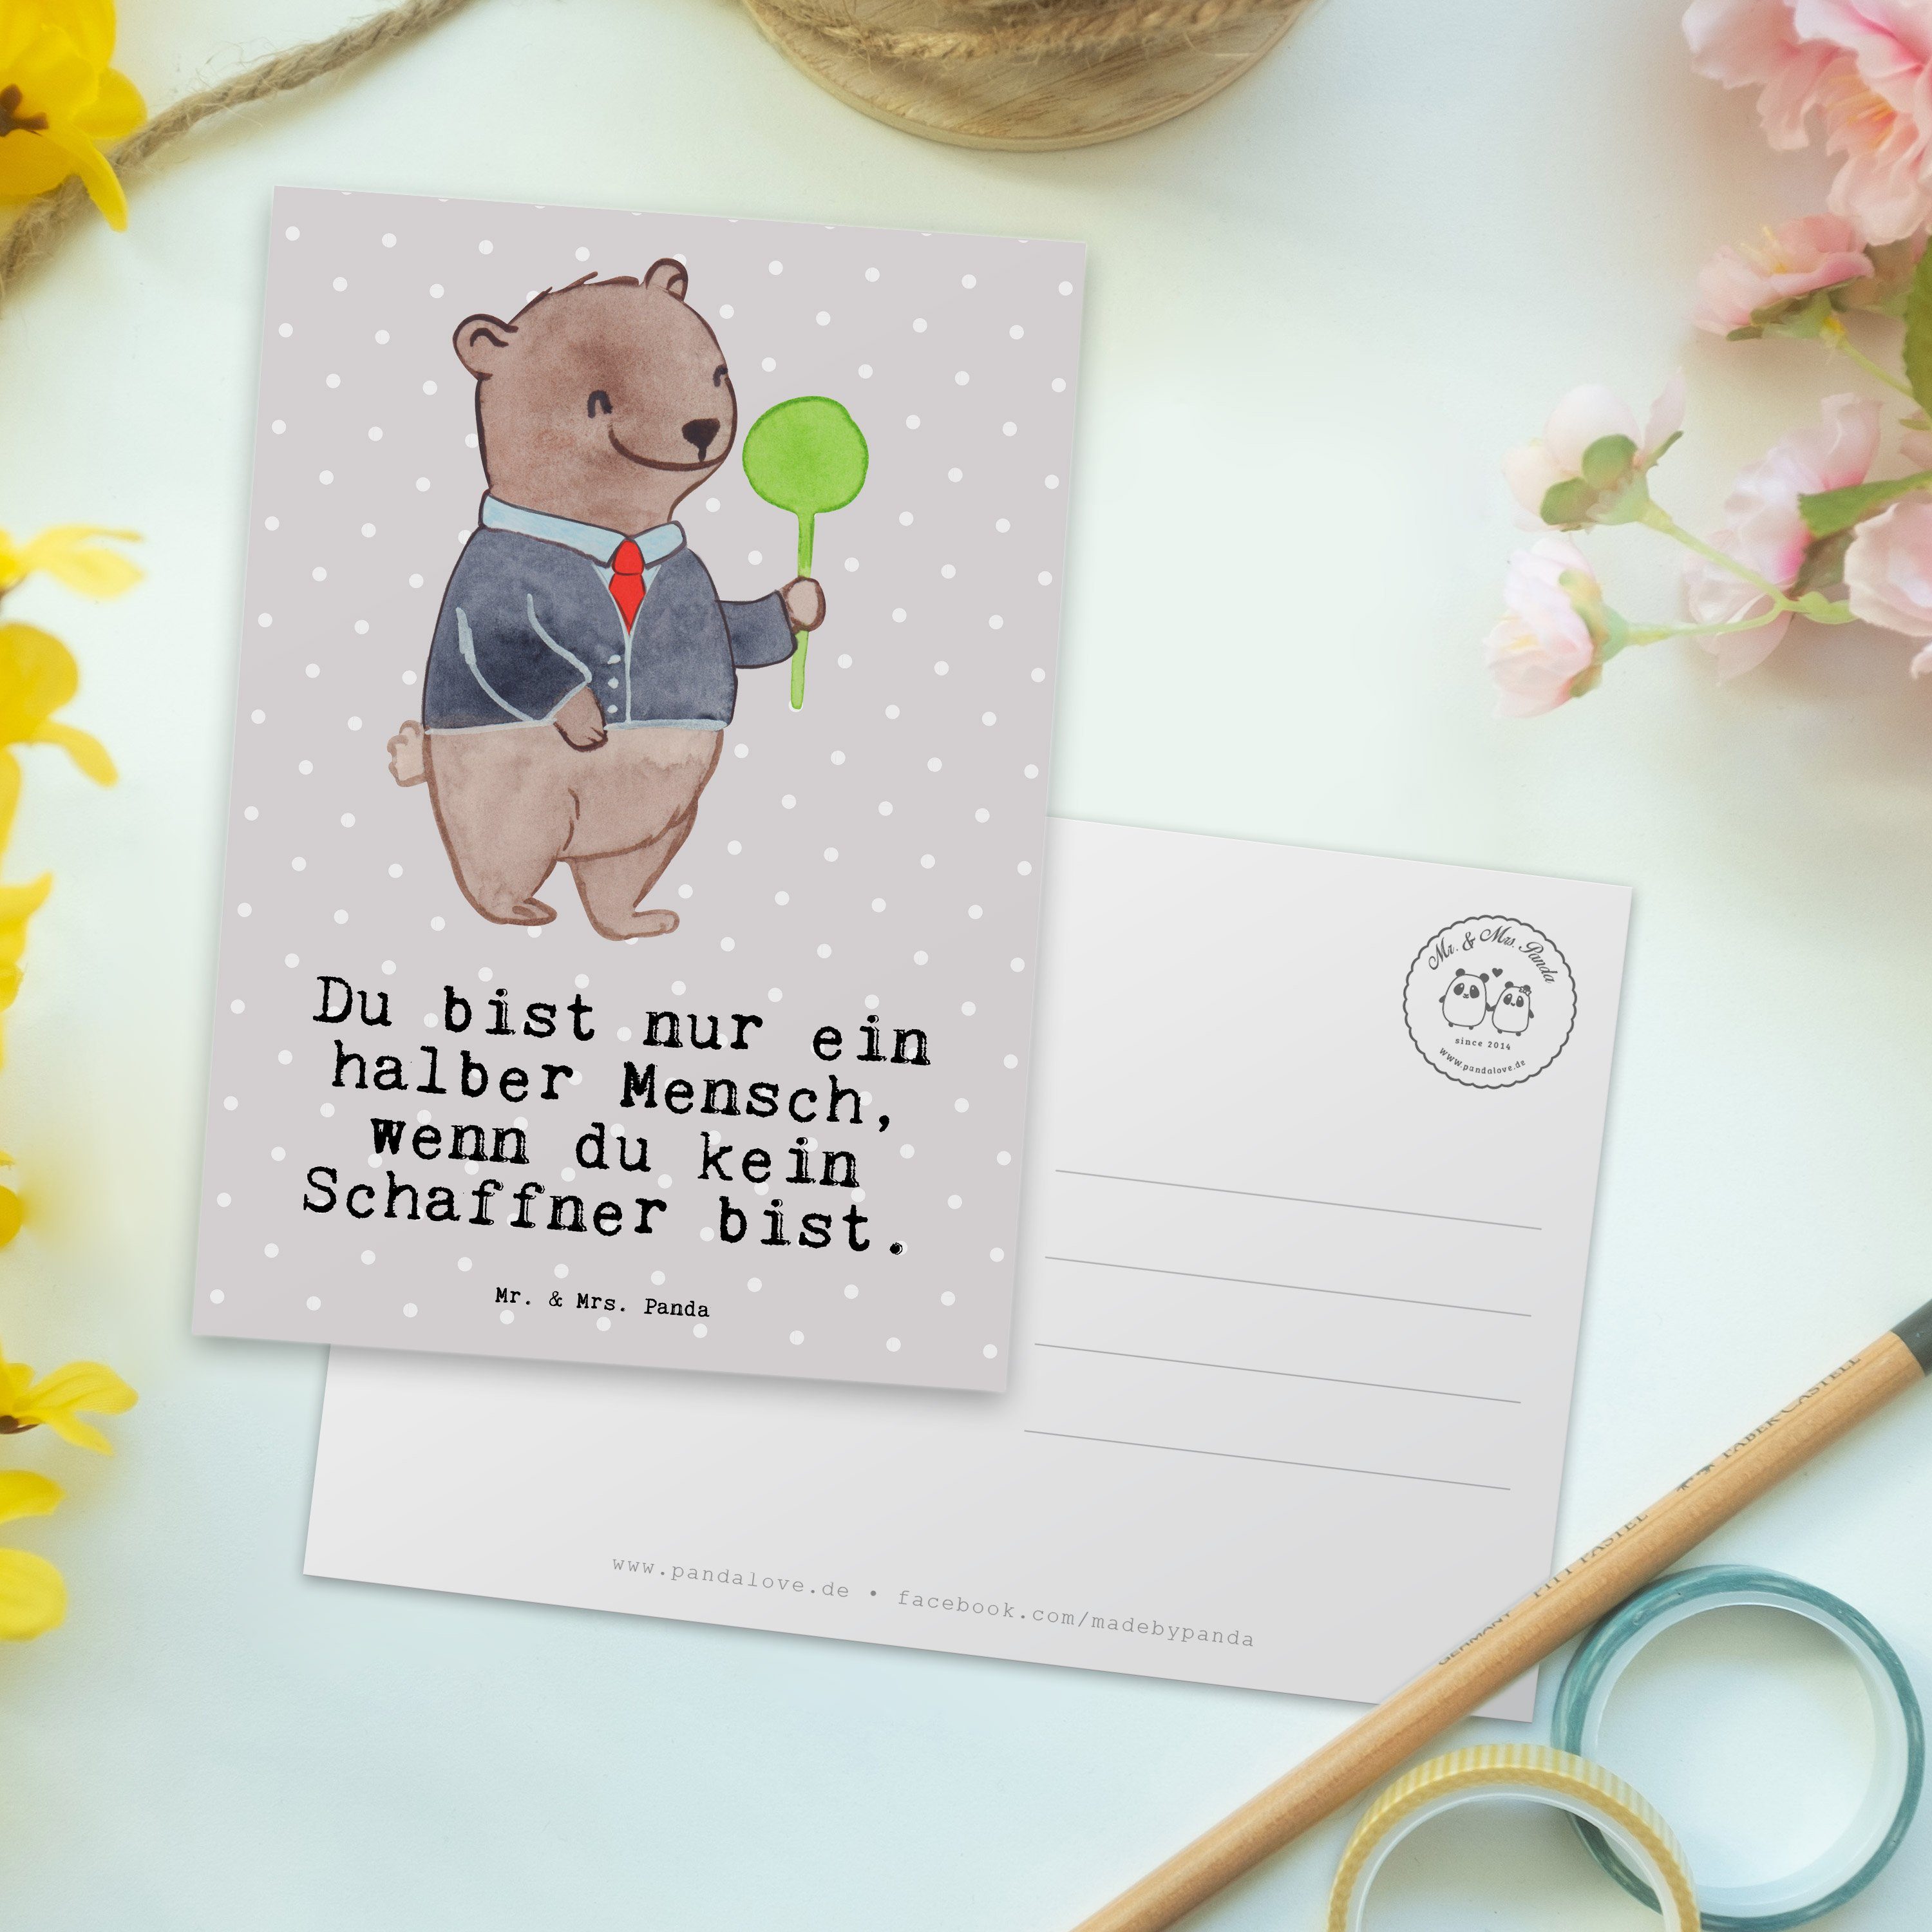 Mr. & Mrs. Panda Pastell Dankeskarte, Herz Geschenk, Schaffner - Ansichtska - Postkarte mit Grau